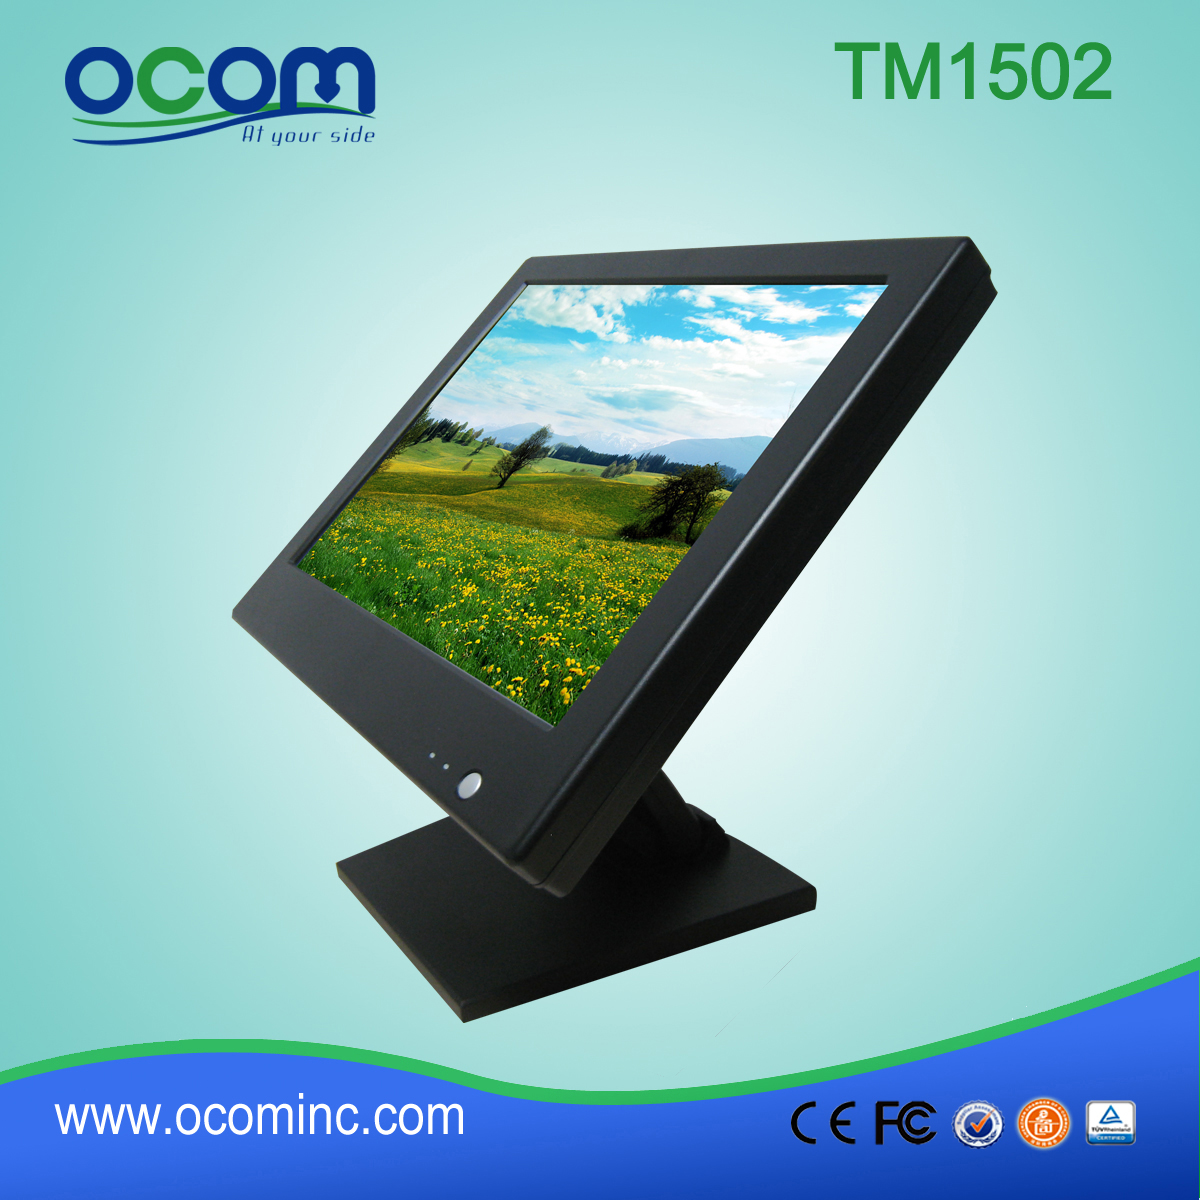 TM1502 15 pollici monitor LCD touch screen per scrivania pos